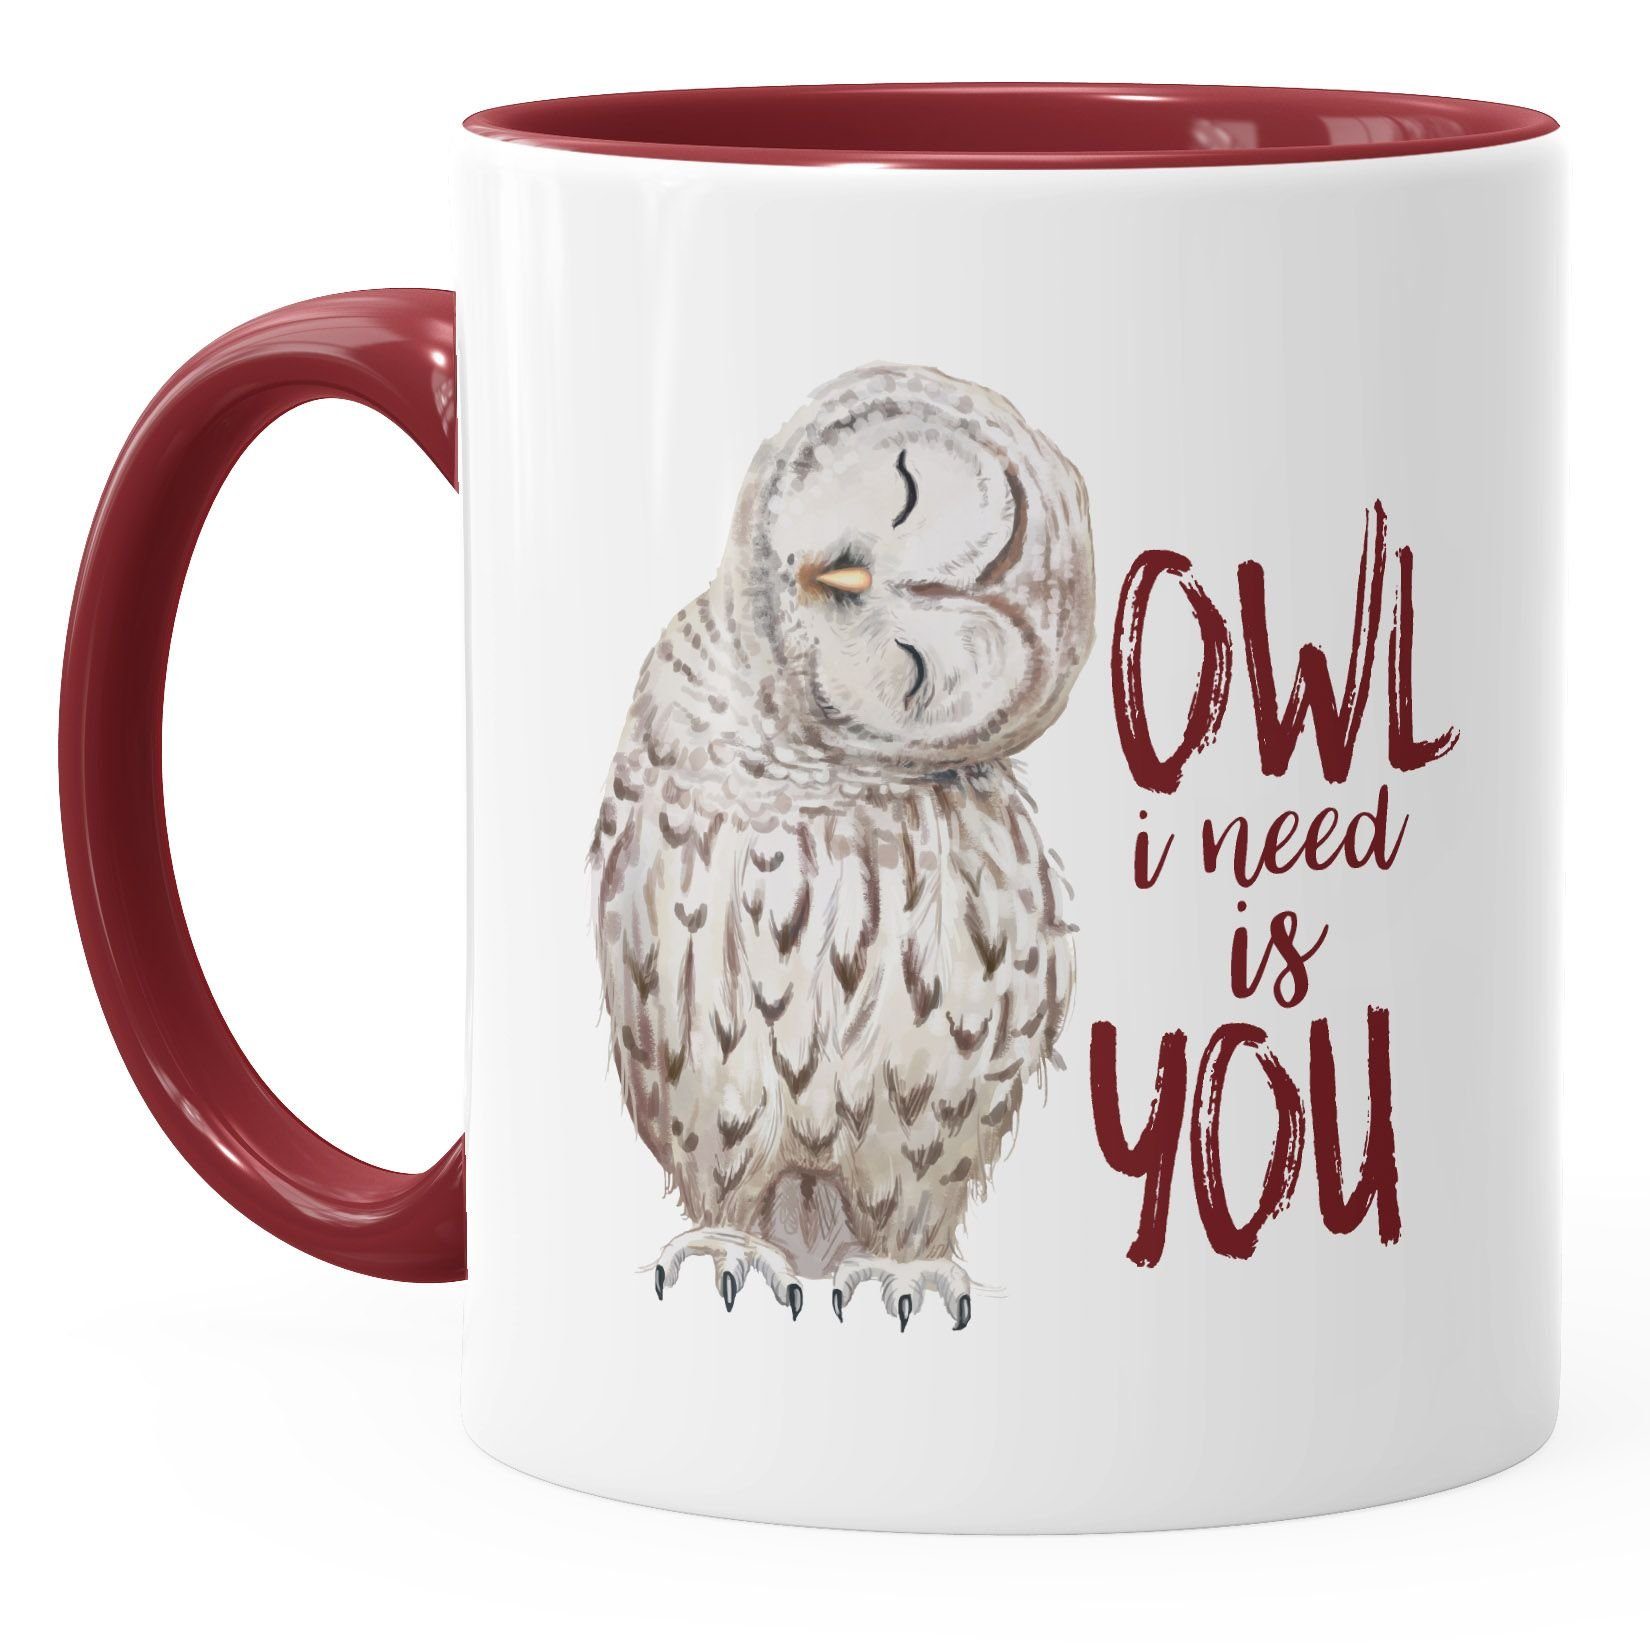 MoonWorks Tasse Kaffee-Tasse Eule Valentinstag Geschenk Owl need Partnerschaft Liebe Weihnachten MoonWorks®, Ehe you bordeauxrot I Keramik Spruch is